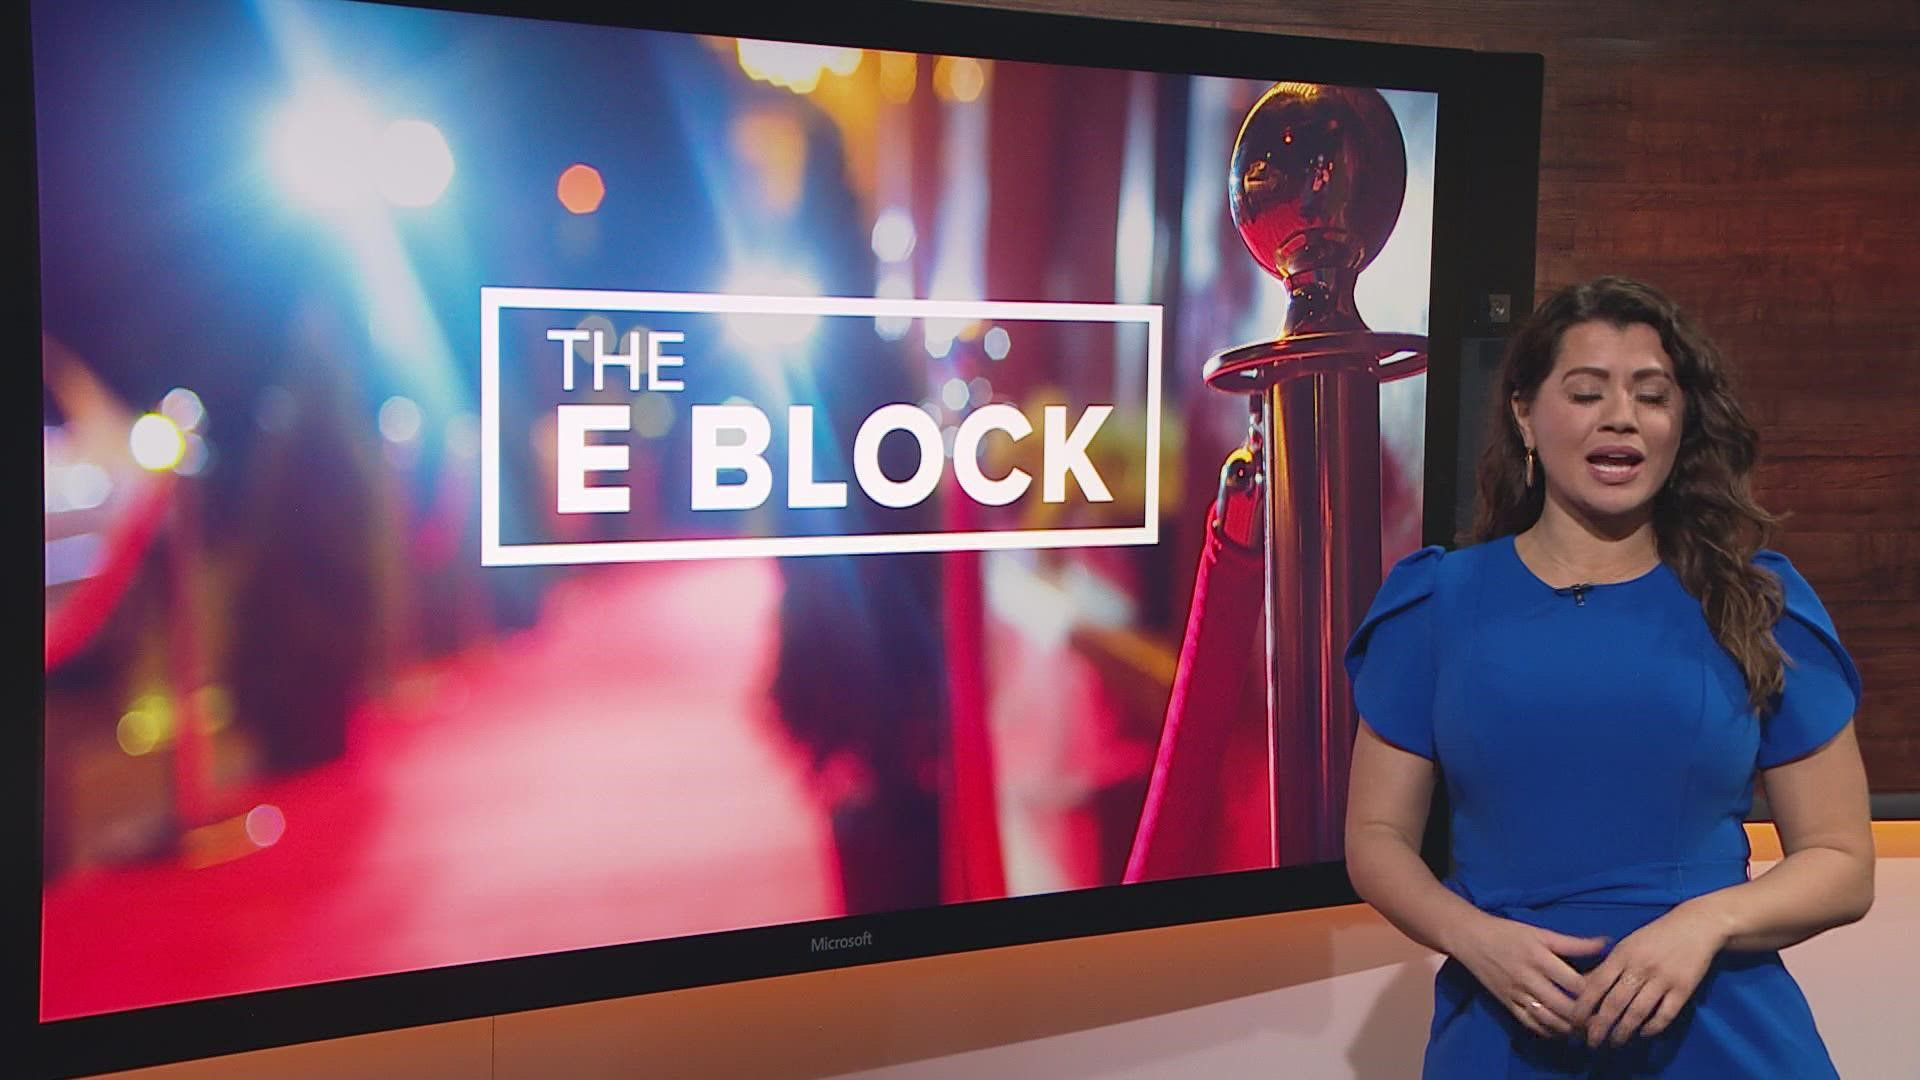 Erica Lopez has your Tuesday E Block.